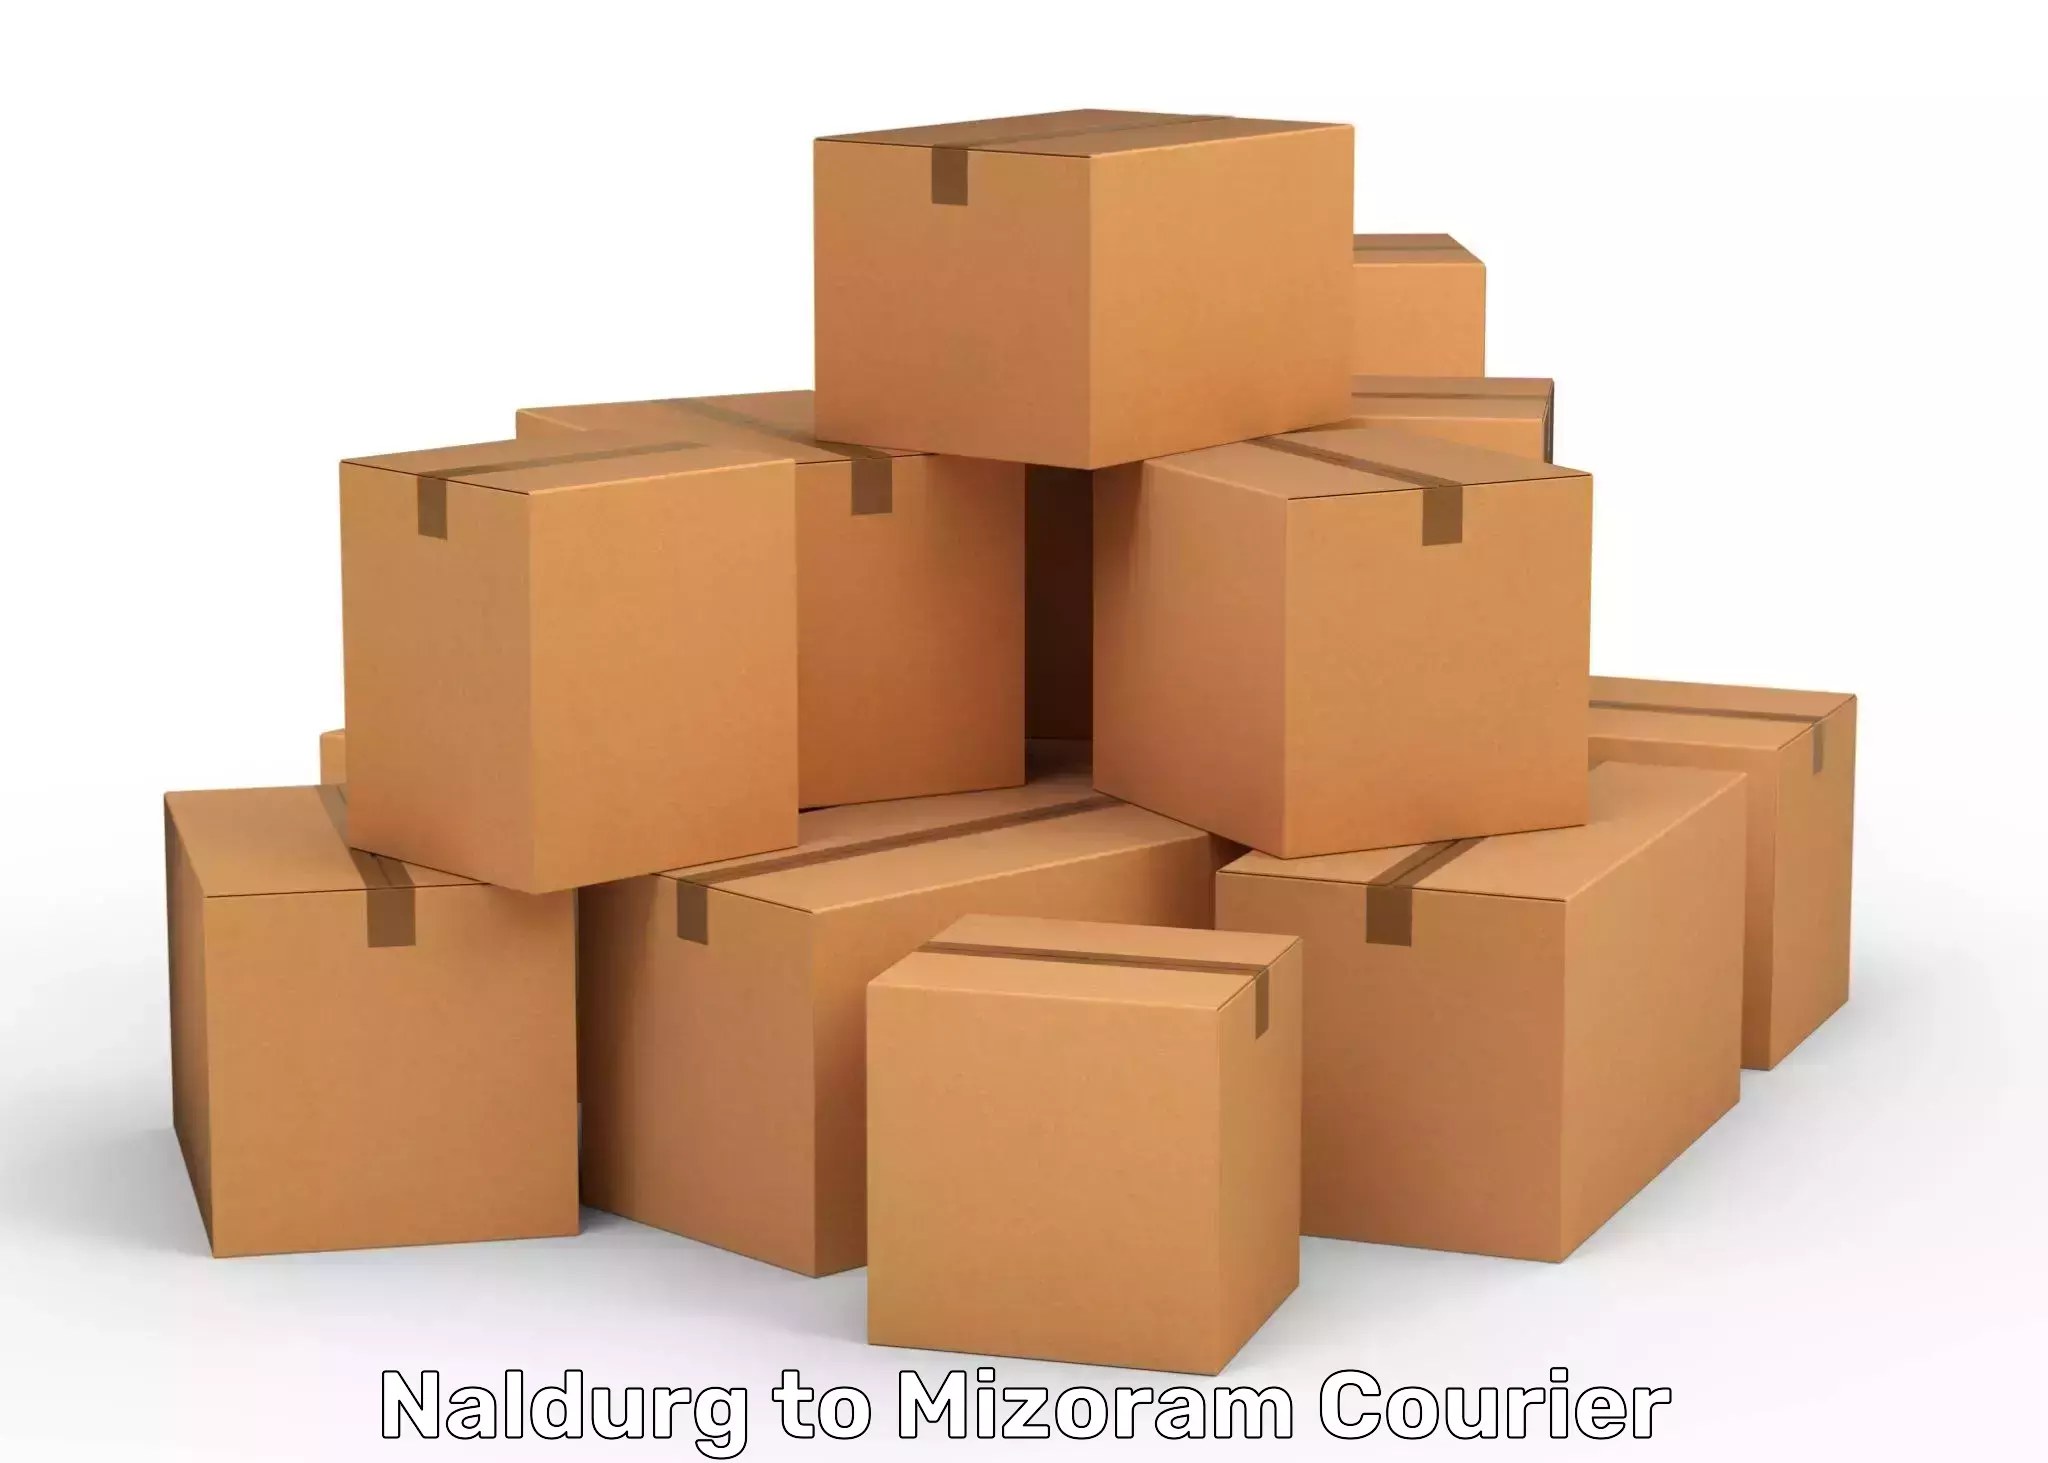 Cost-effective courier options Naldurg to Mizoram